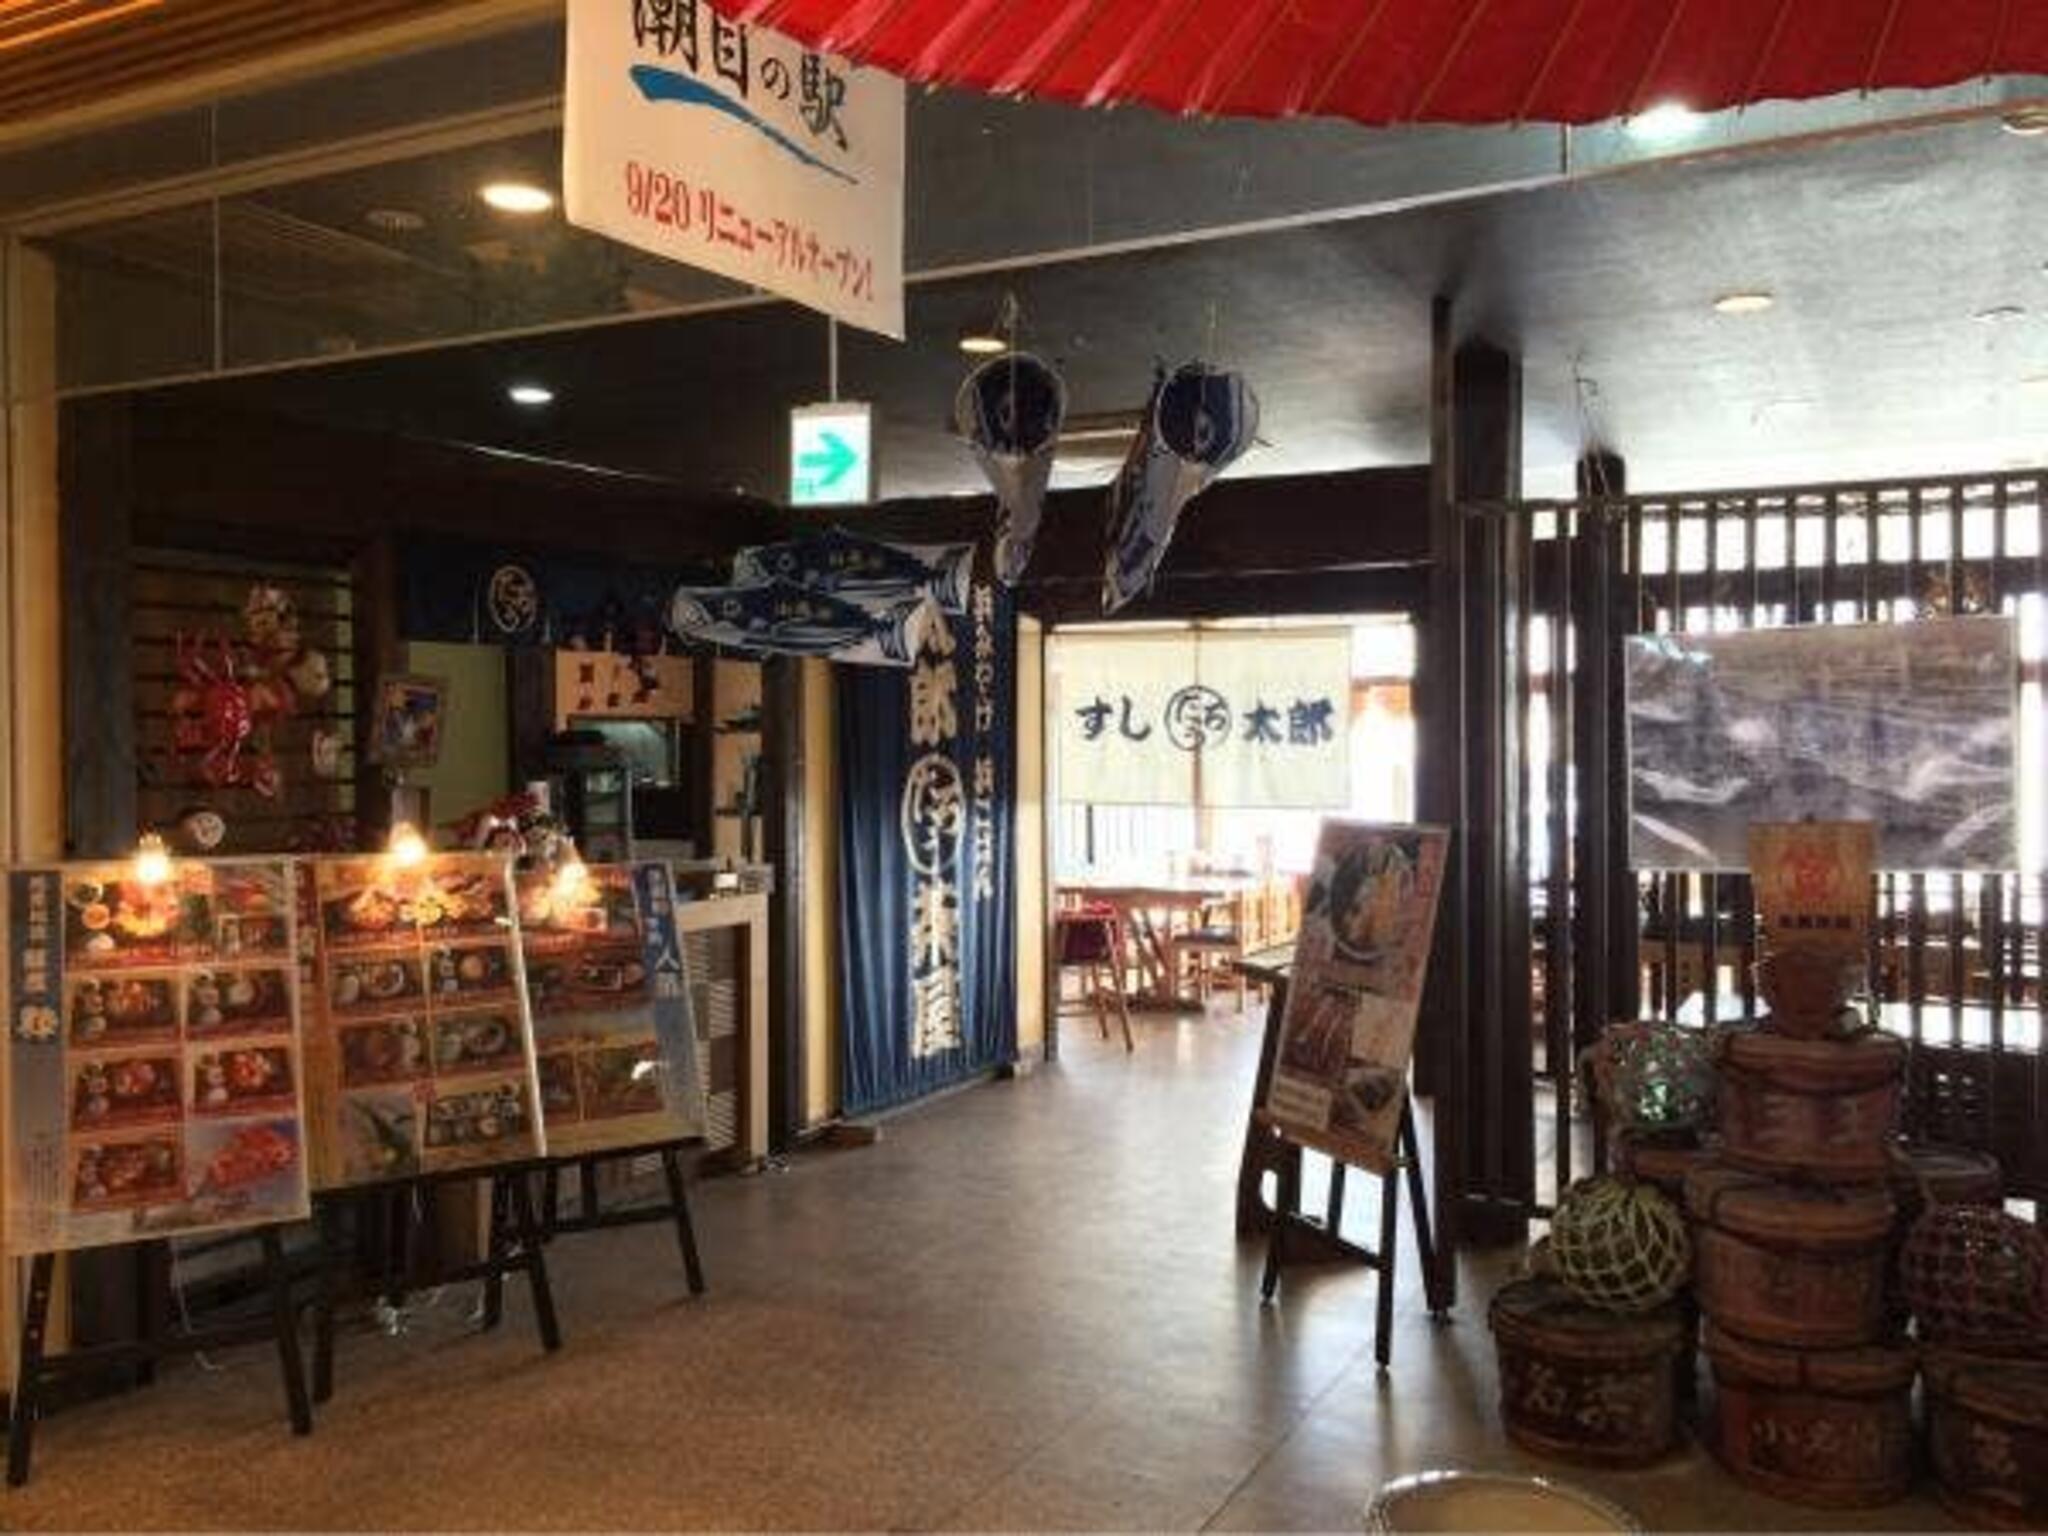 太郎茶屋 - いわき市小名浜/和食店 | Yahoo!マップ